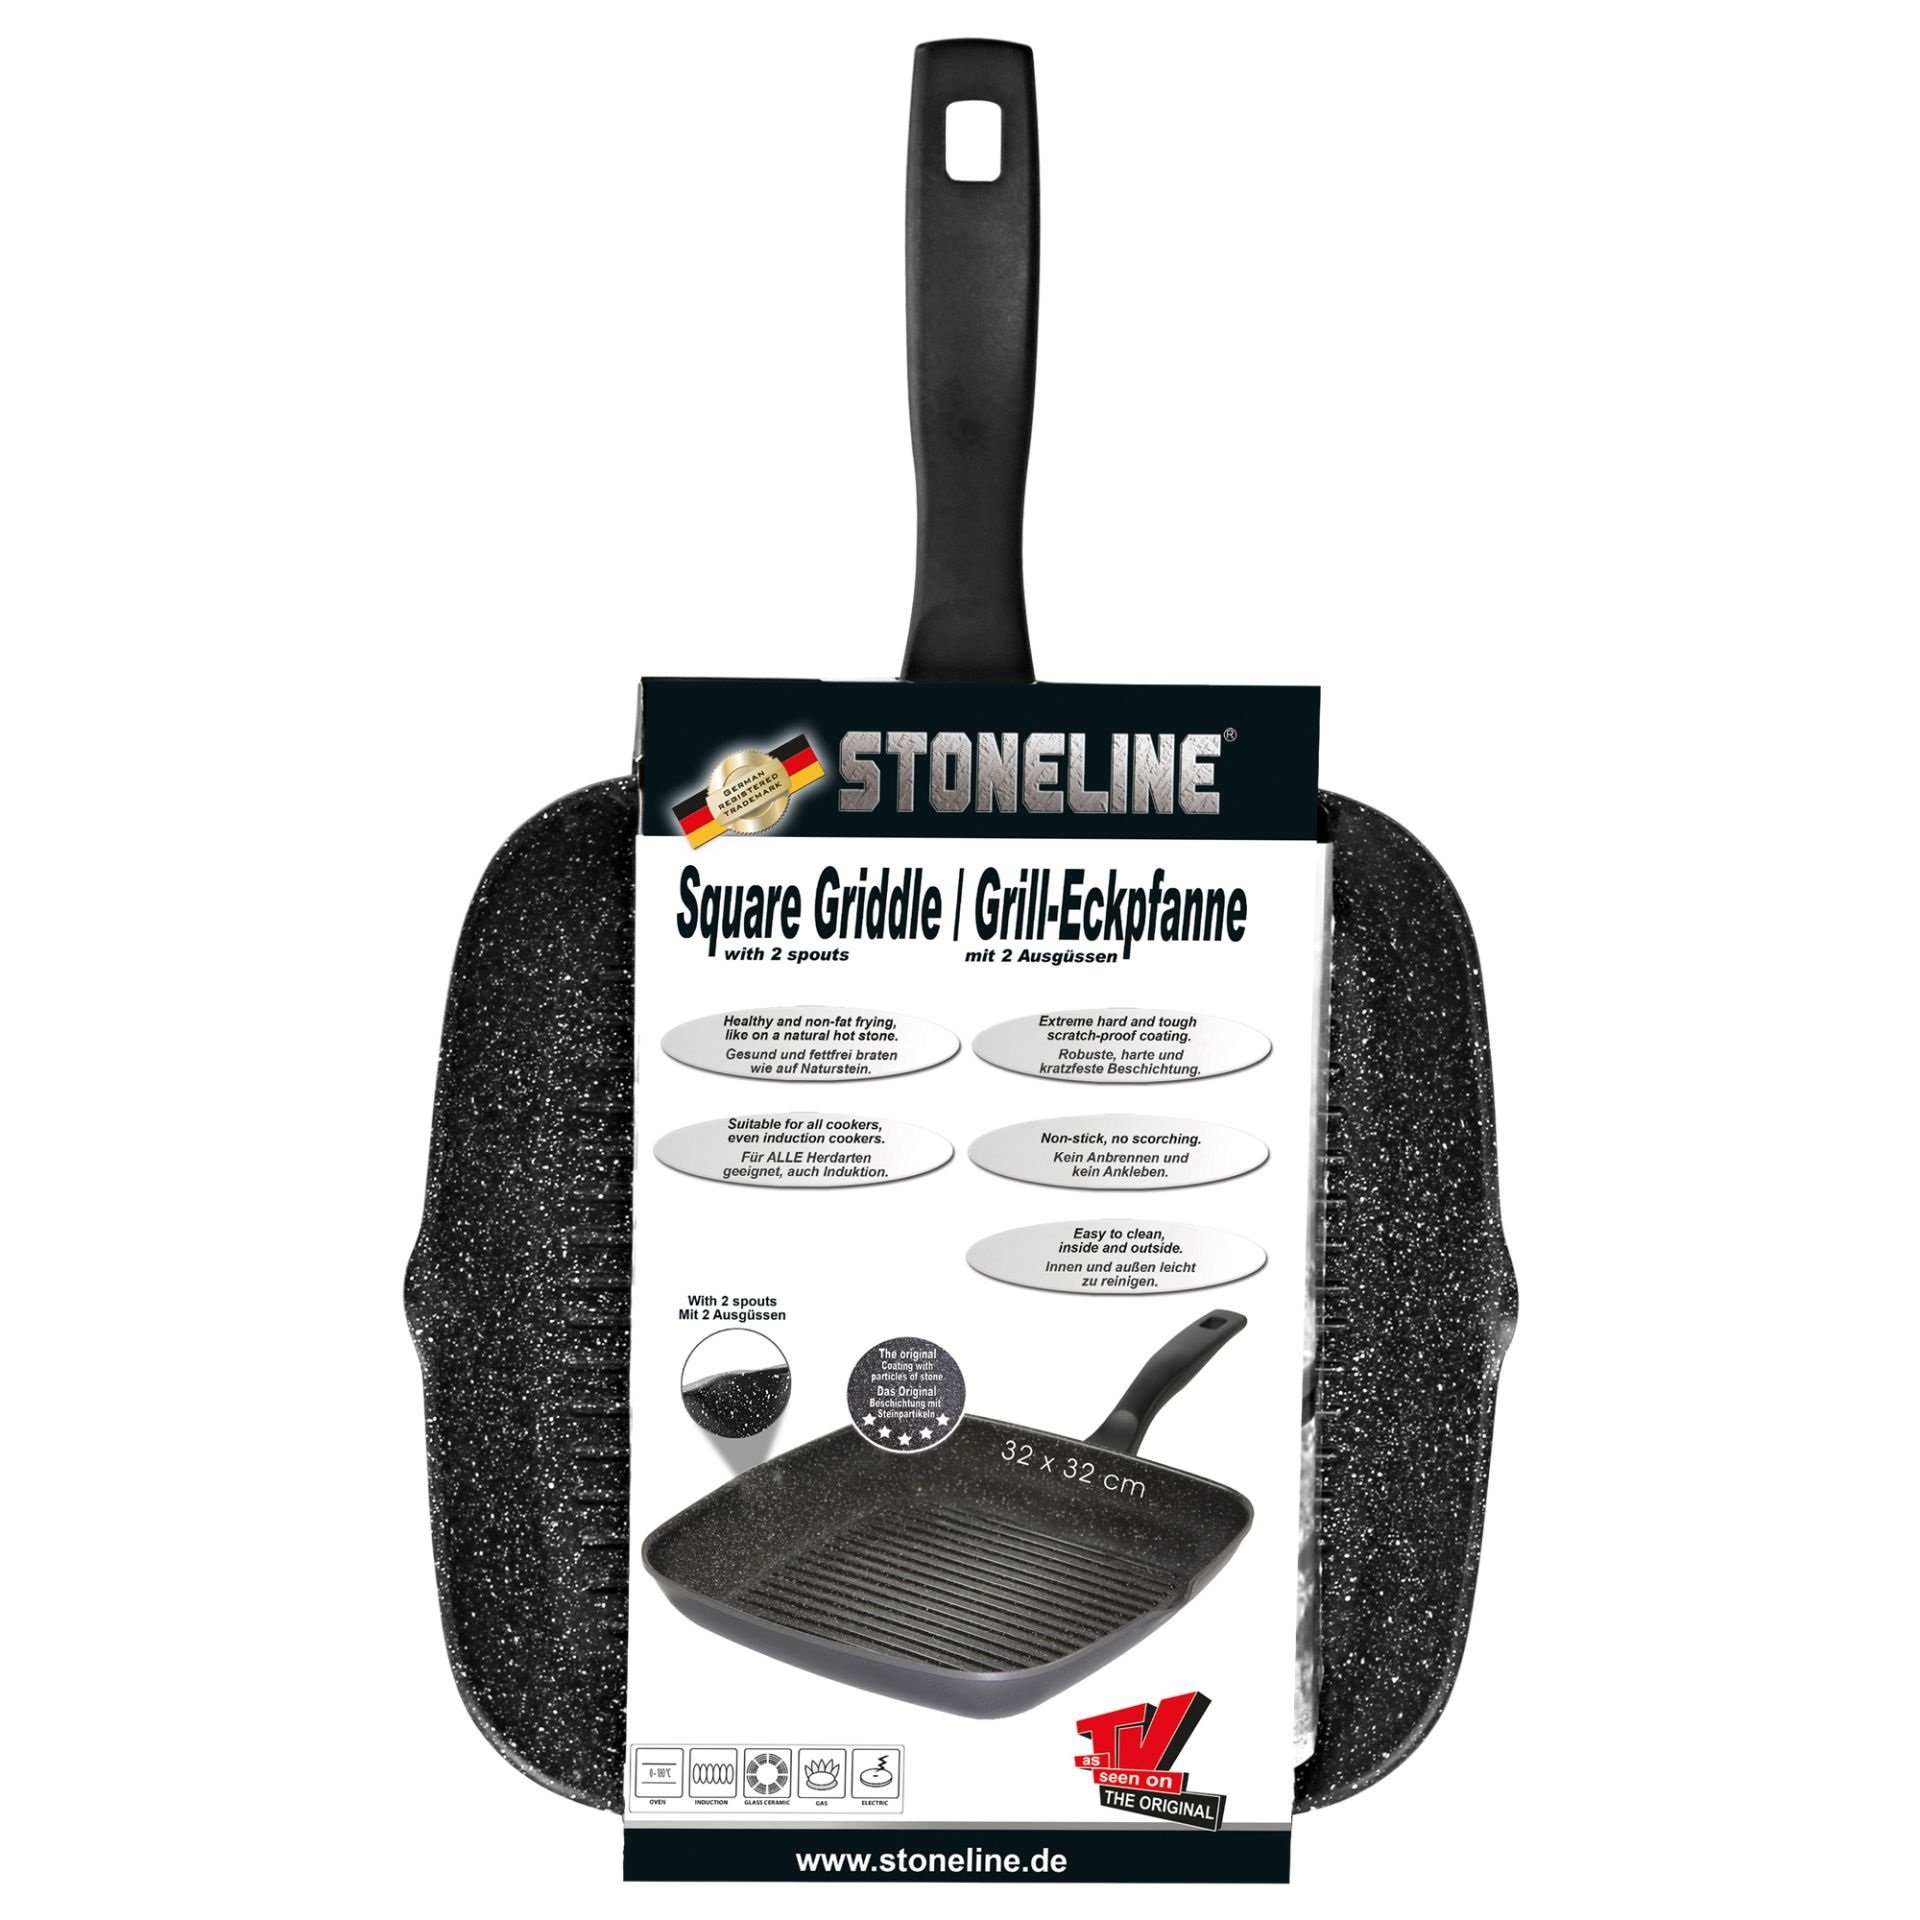 STONELINE® BBQ Griddle Pan 32 cm, 2 Spouts, Non-Stick Pan | CLASSIC